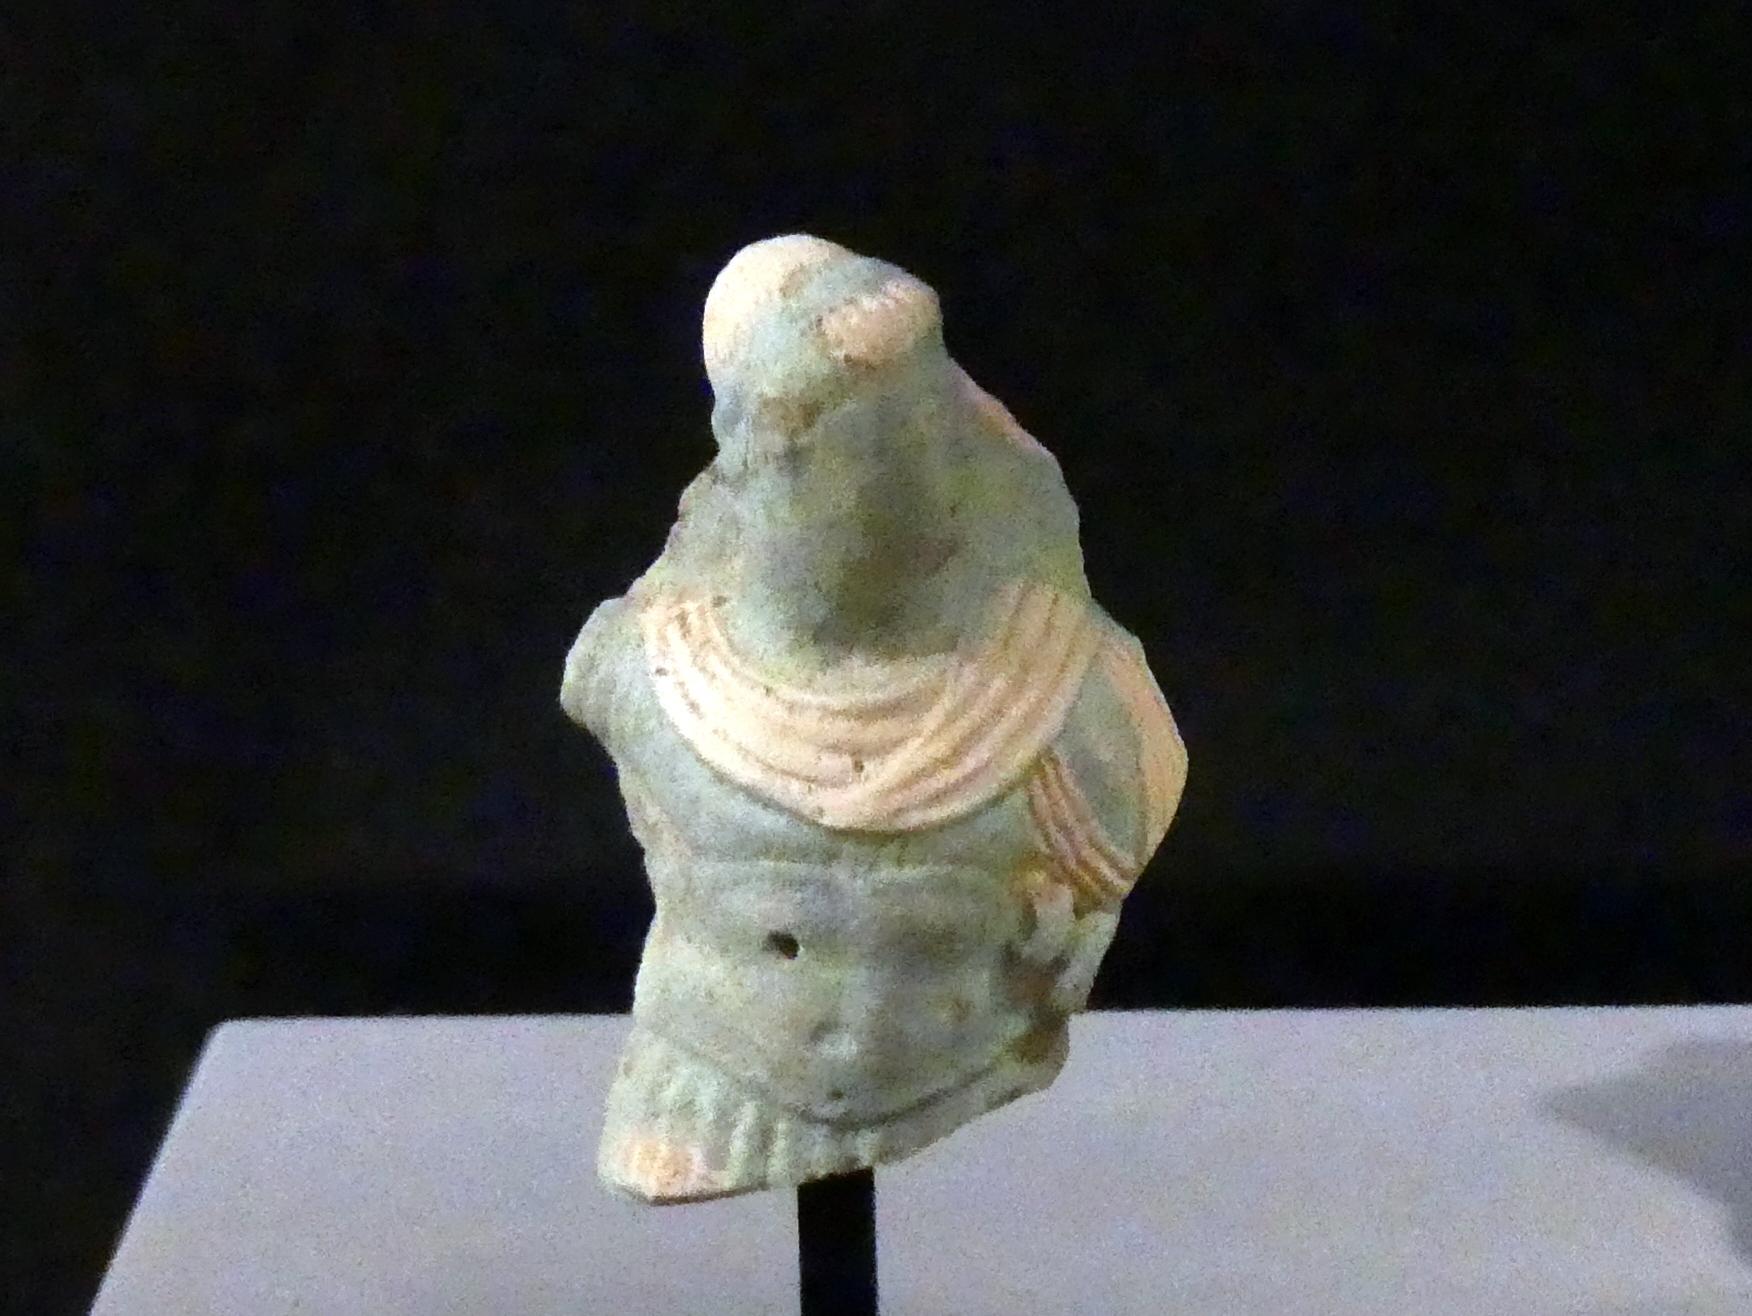 Fragment eines reliefierten Gefäßes mit Darstellung eines ptolemäischen Herrschers, Ptolemäische Zeit, 400 v. Chr. - 1 n. Chr., 300 - 100 v. Chr.